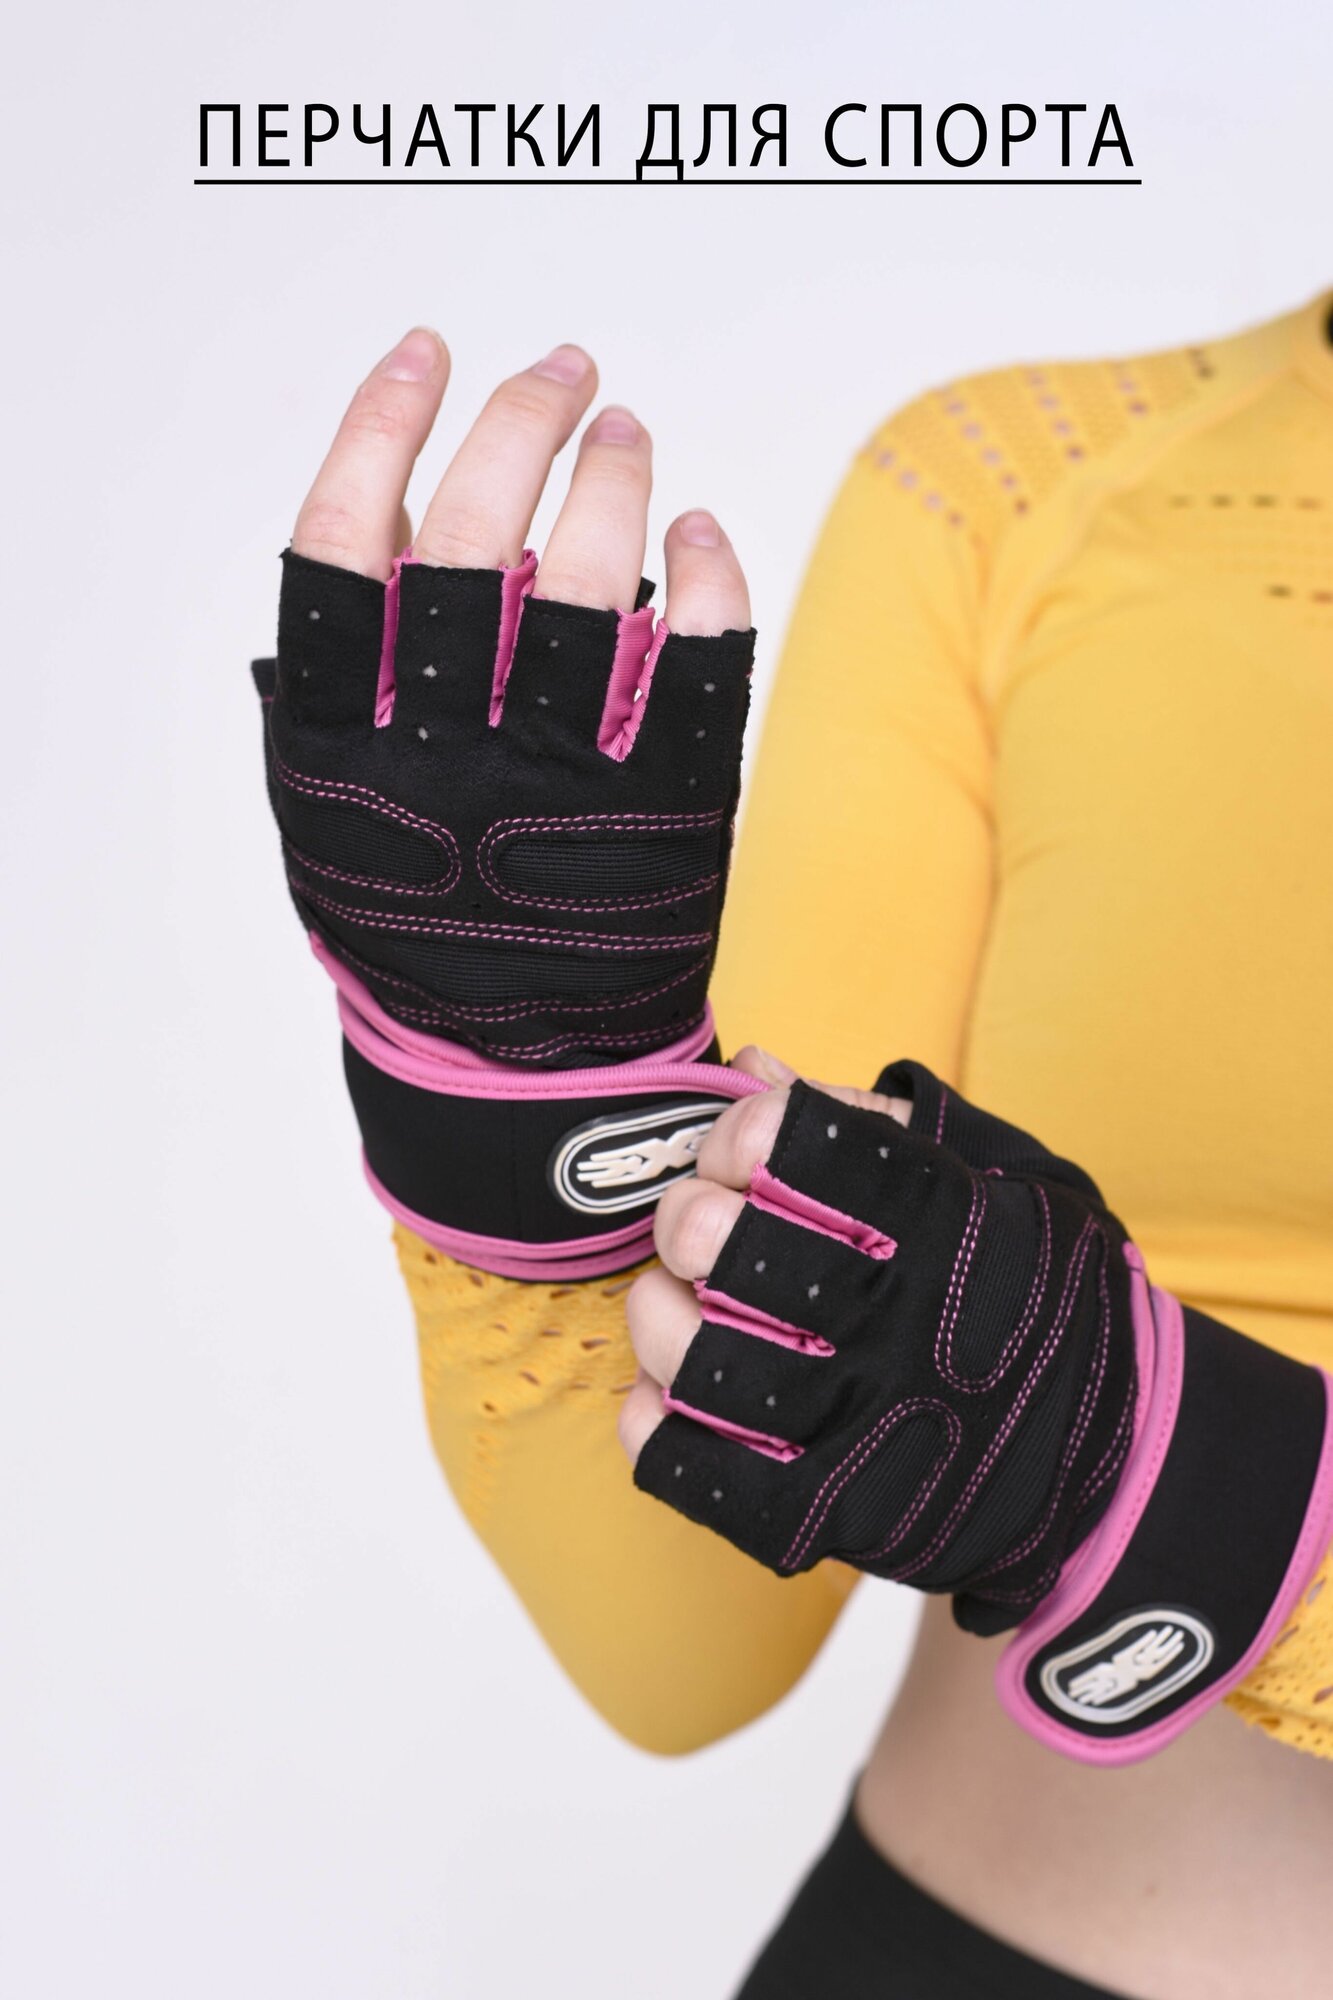 Перчатки без пальцев спортивные, перчатки защитные для фитнеса, спортзала pink L